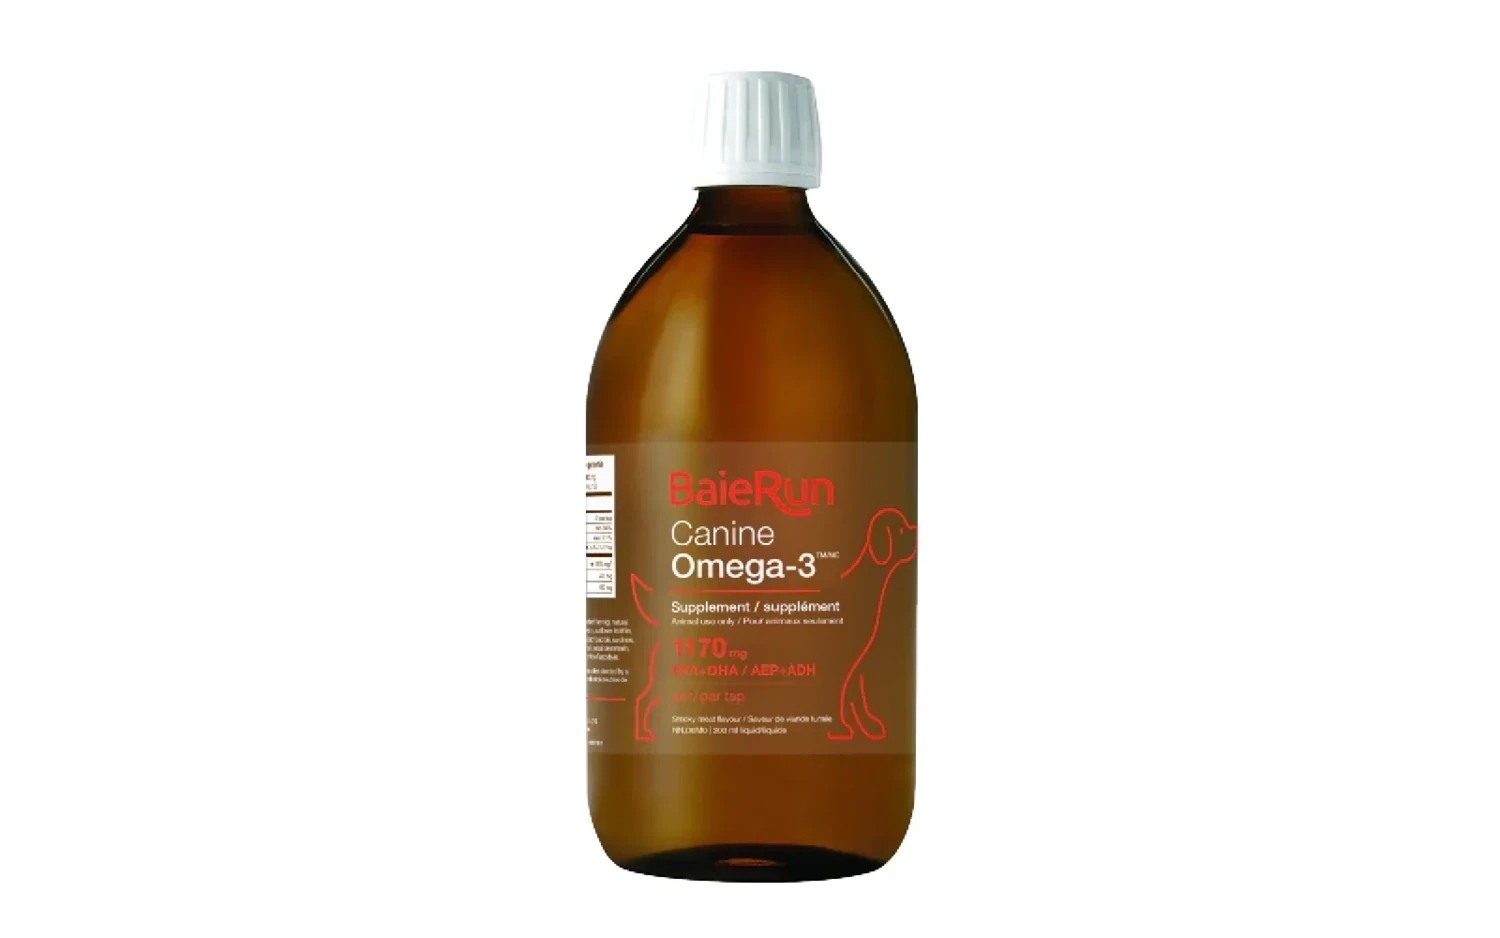 Baie Run - Omega 3 Oil